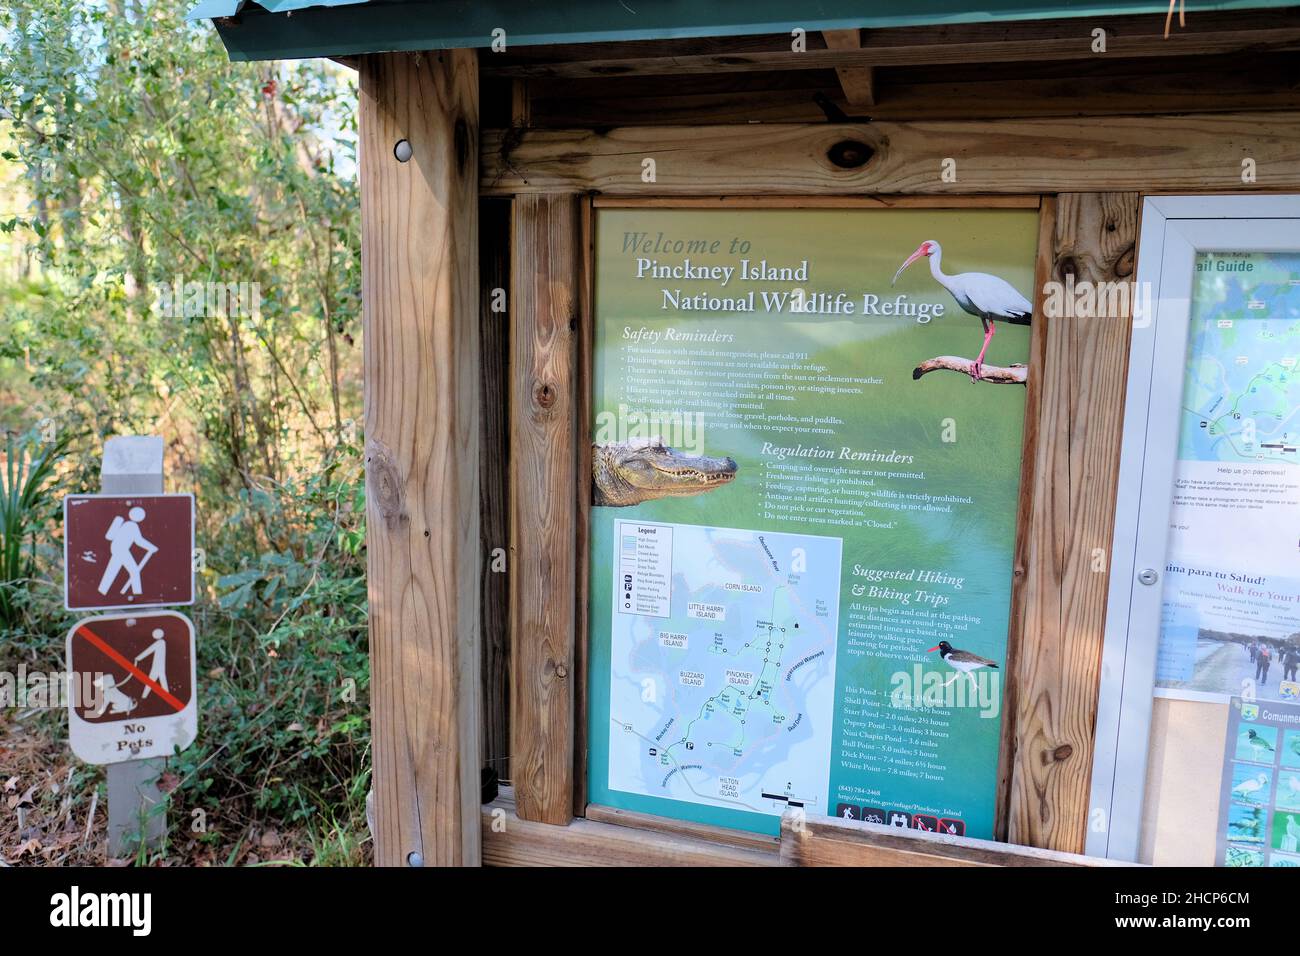 Pinckney Island National Wildlife Refuge in Hilton Head, South Carolina; ein Natur- und Waldschutzgebiet, das vom Savannah Coastal Refuges Complex verwaltet wird. Stockfoto